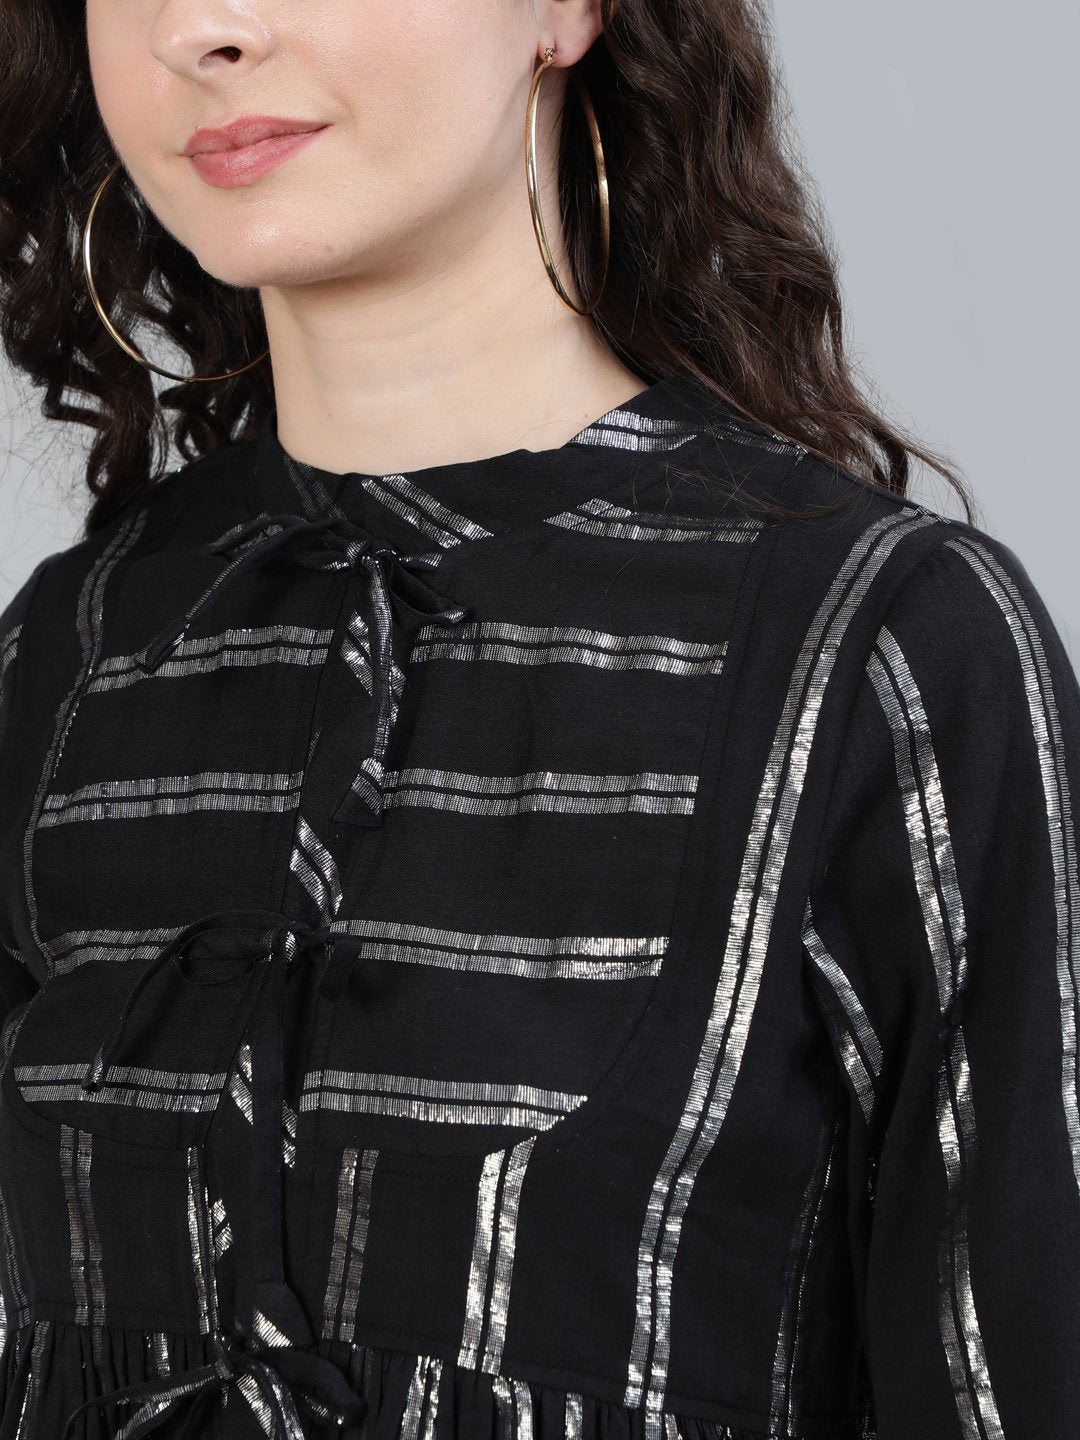 Ishin Women's Black Striped Shimmer Weave A-Line Top